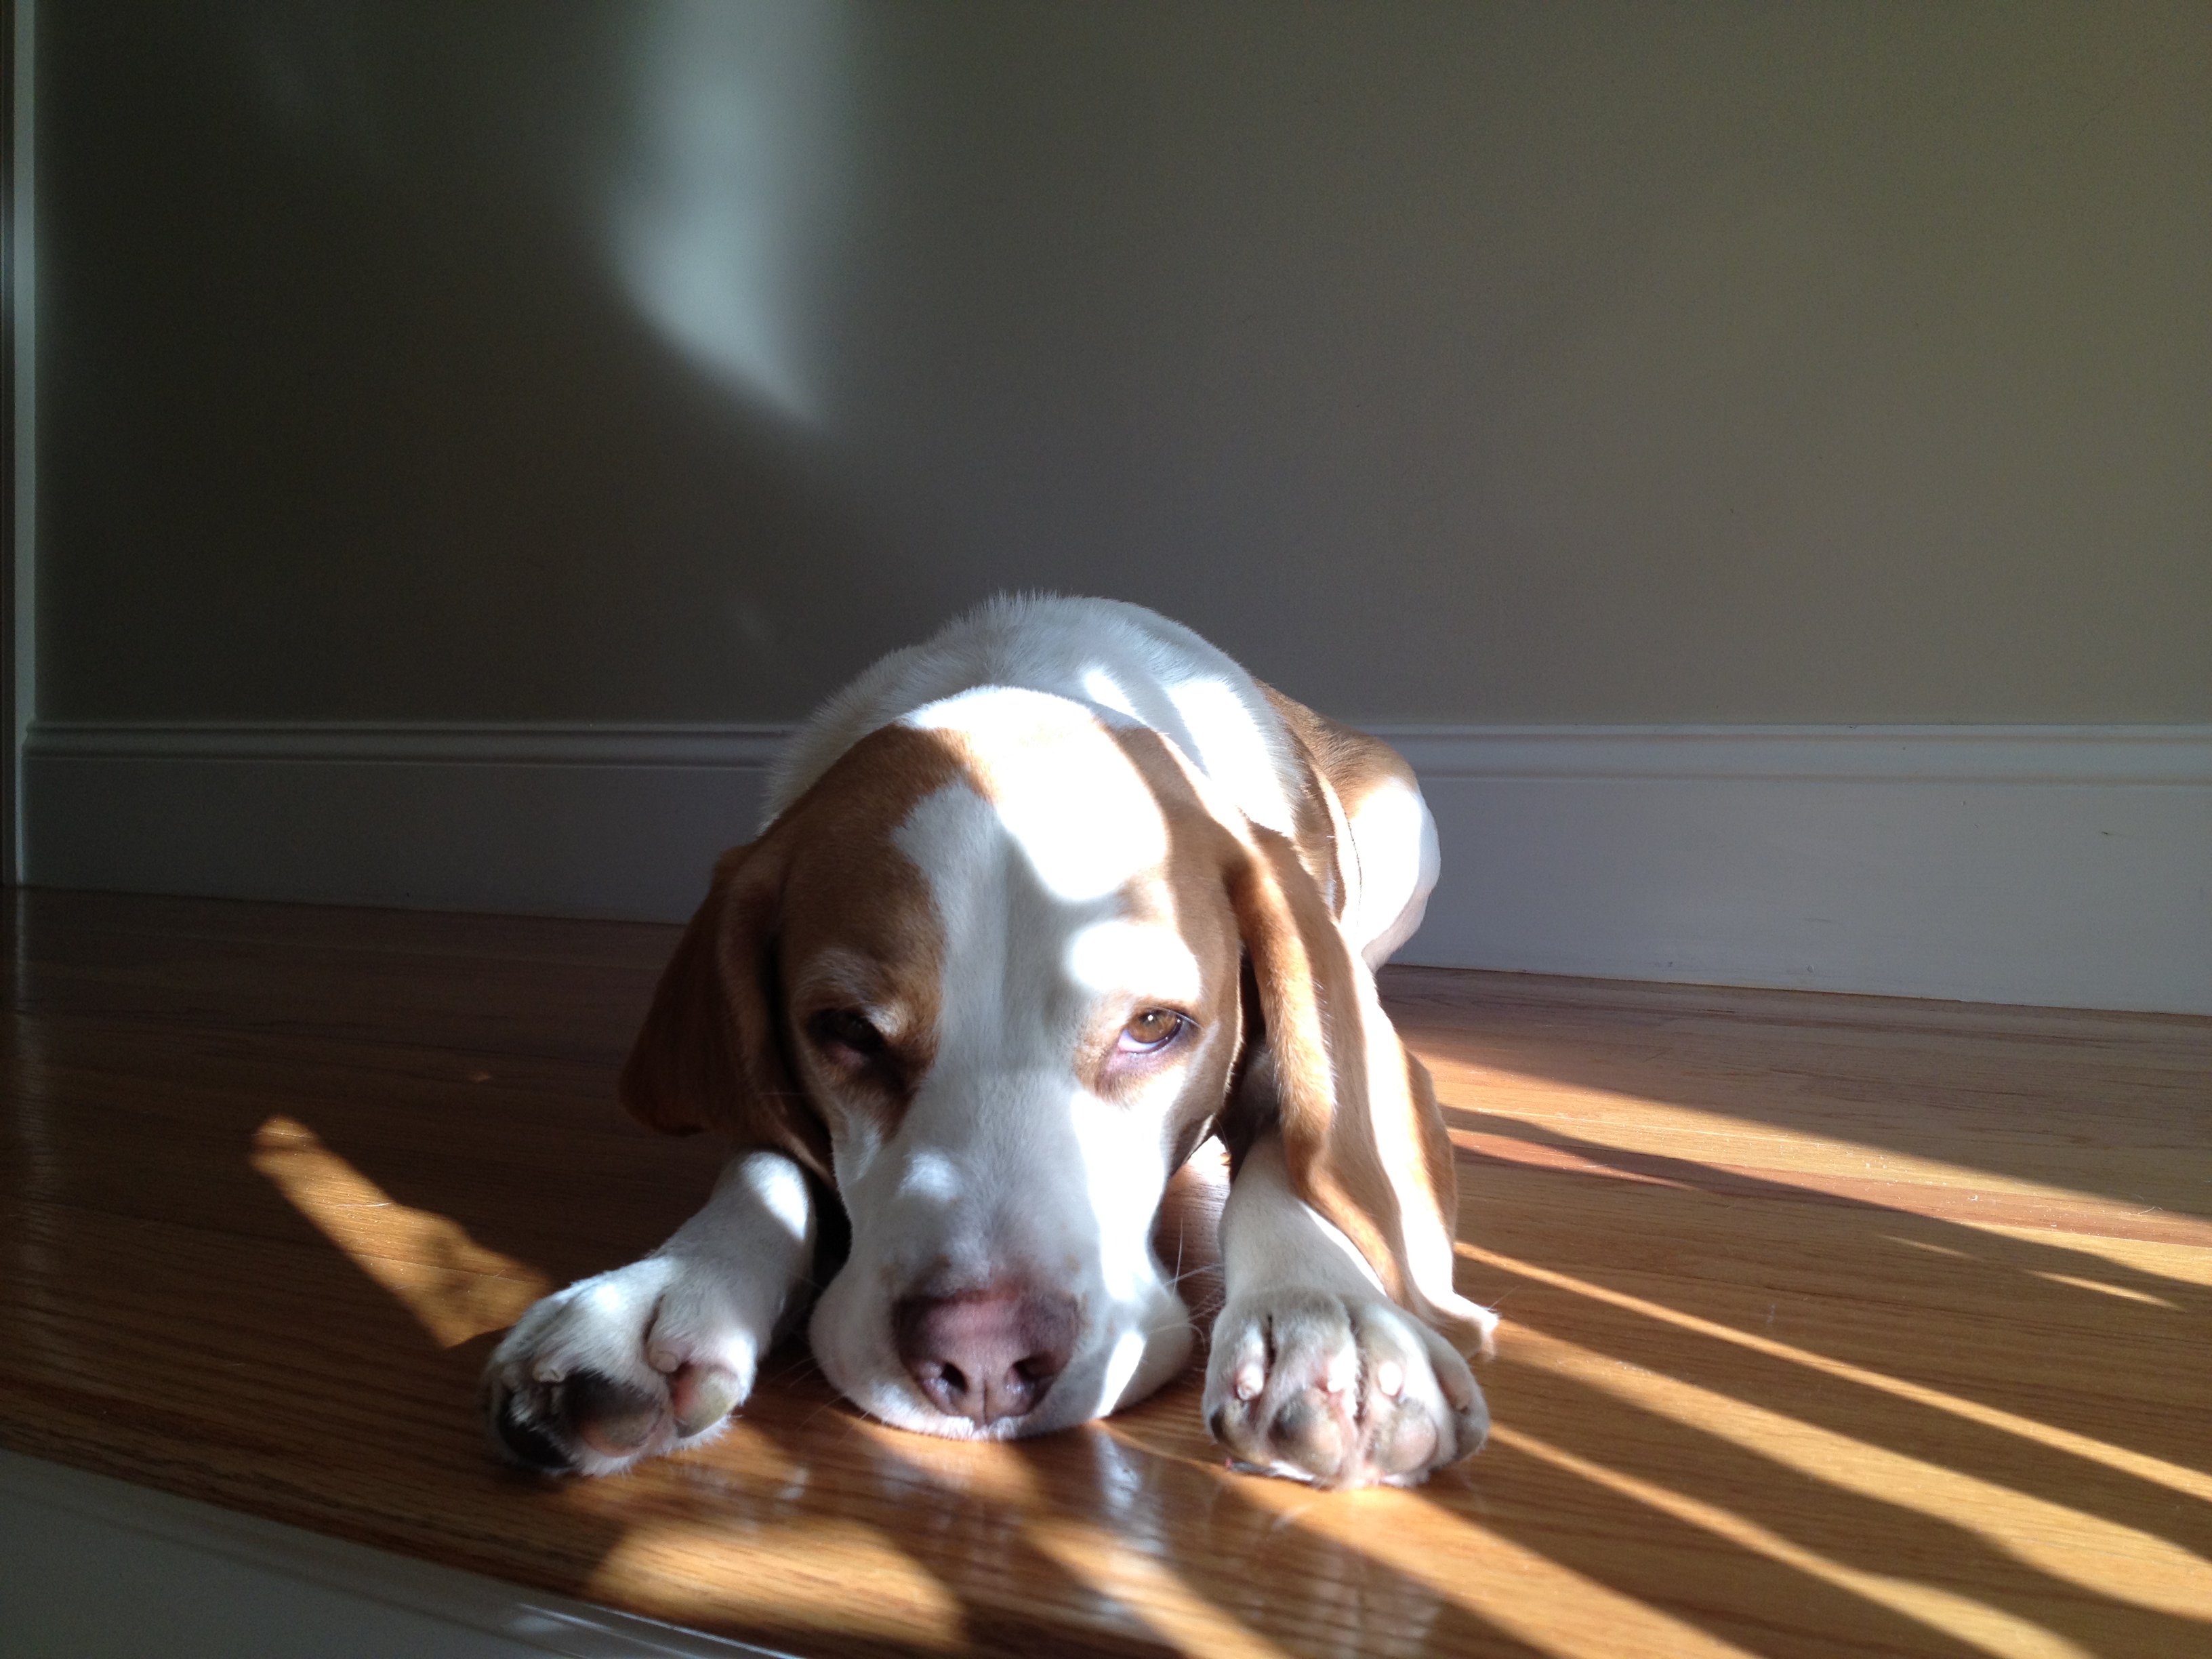 Harrison the Beagle